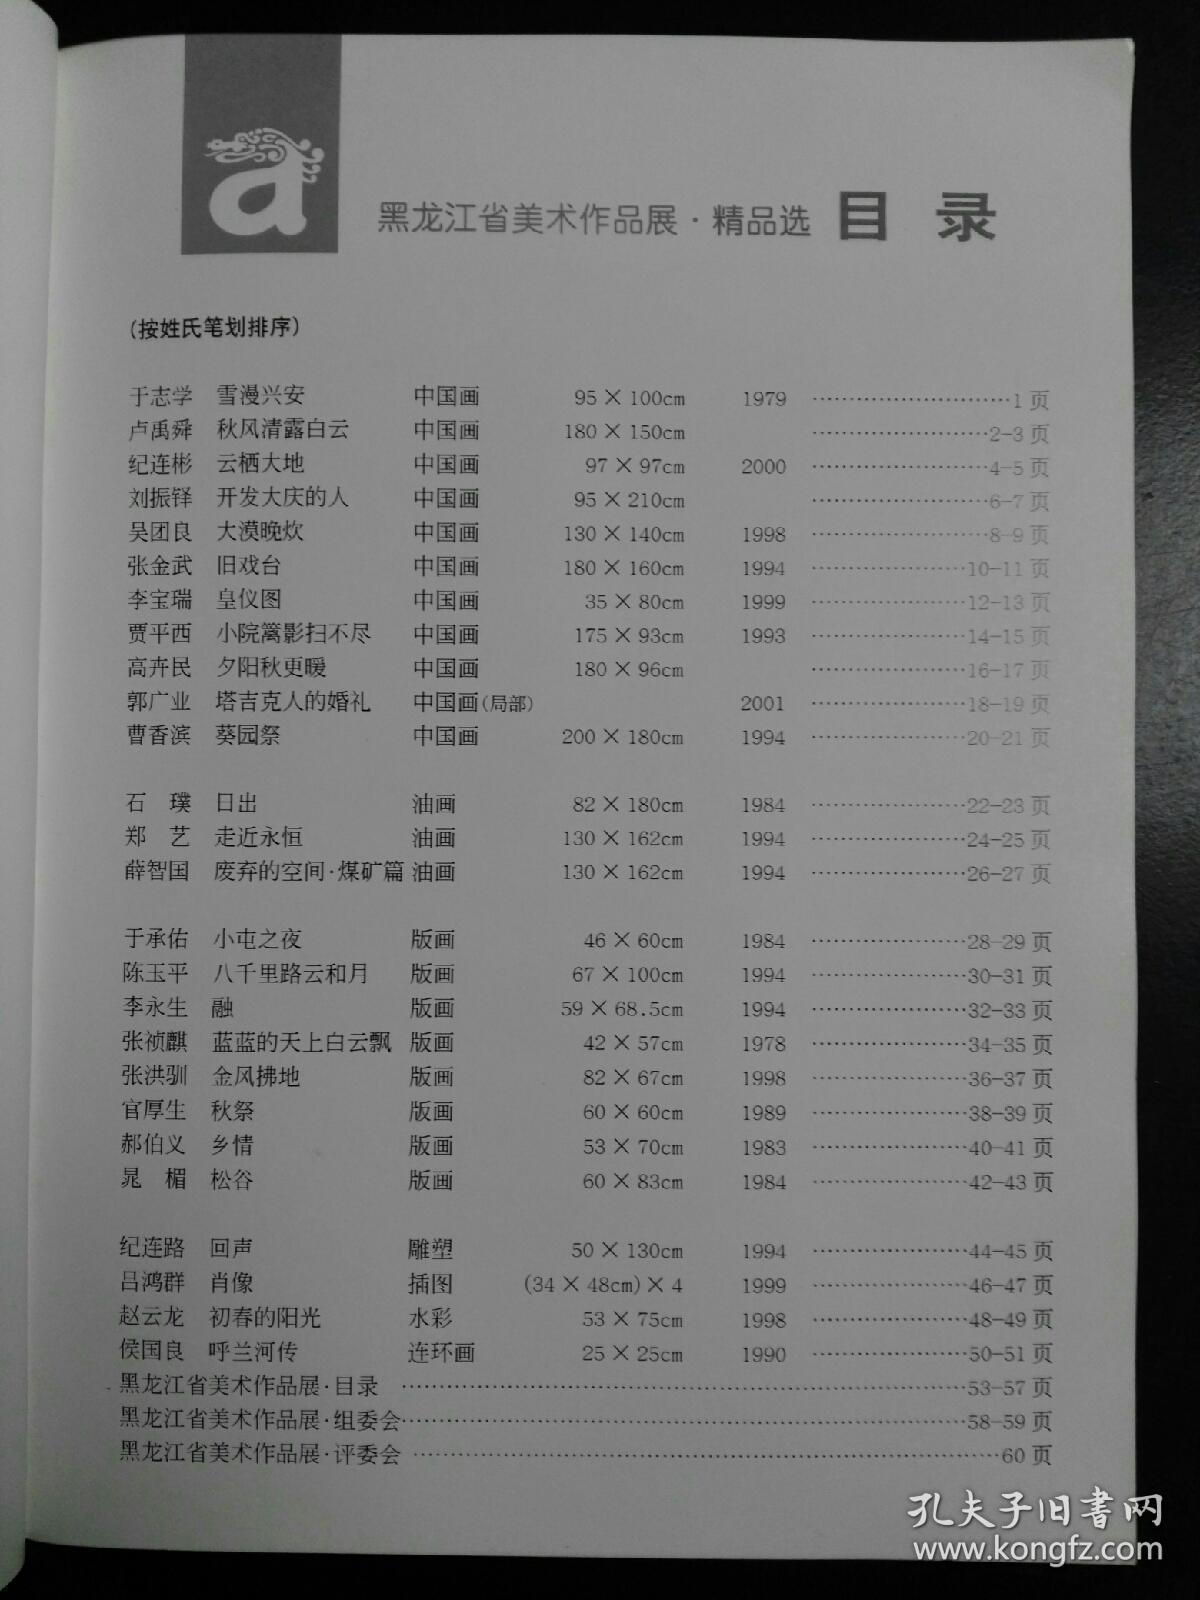 收藏品  美术书籍  黑龙江省美术作品展 精品选 2001年北京 实物照片品相如图